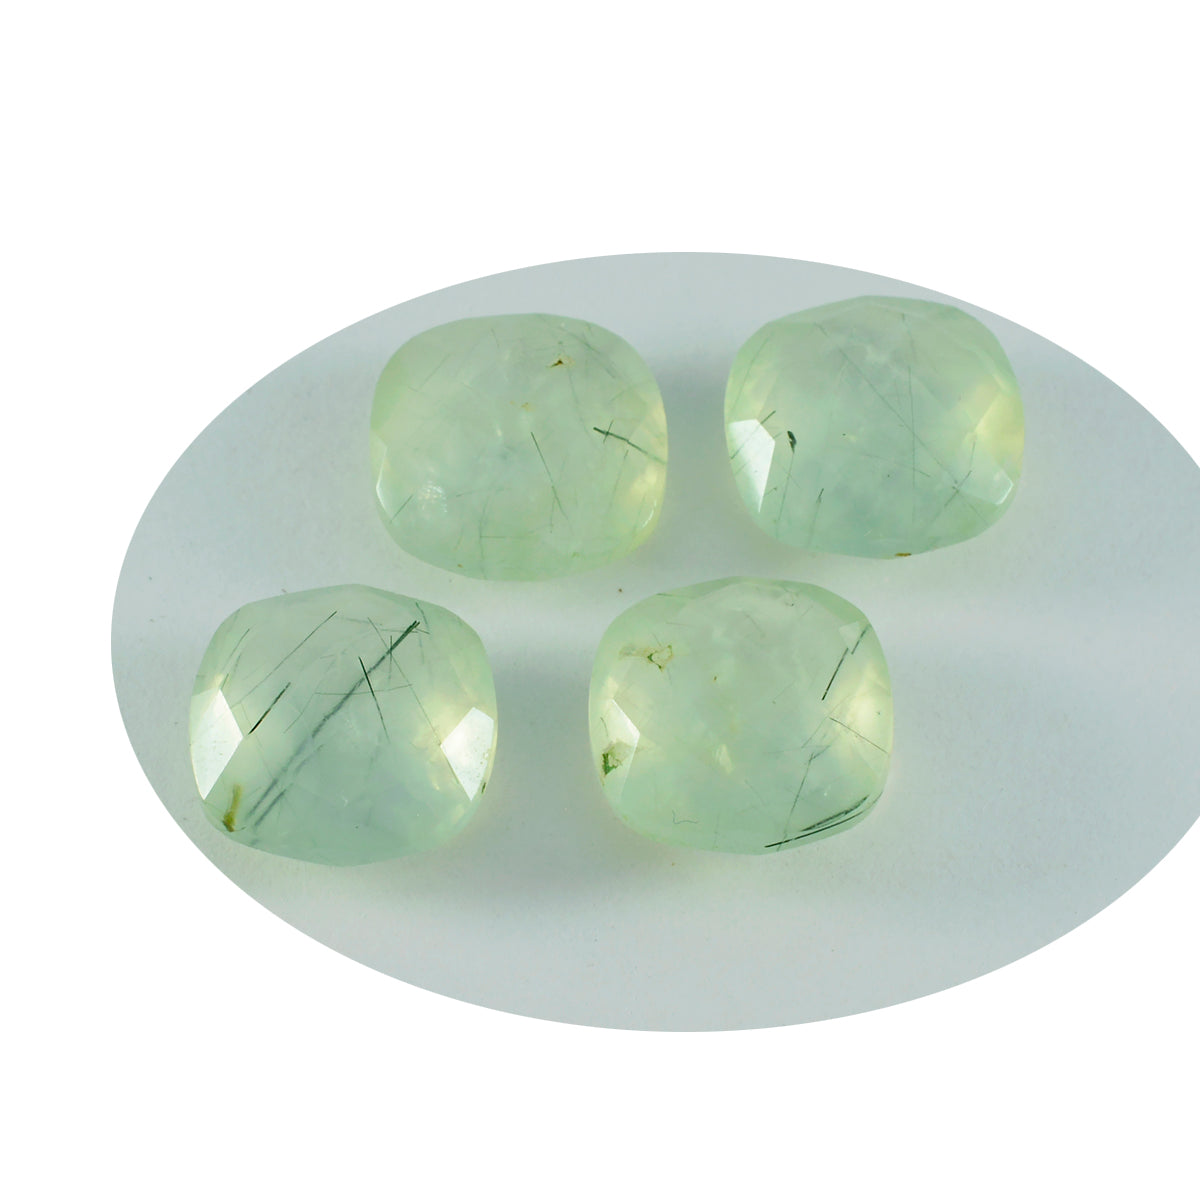 riyogems 1шт зеленый пренит граненый 15x15 мм в форме подушки красивый качественный камень